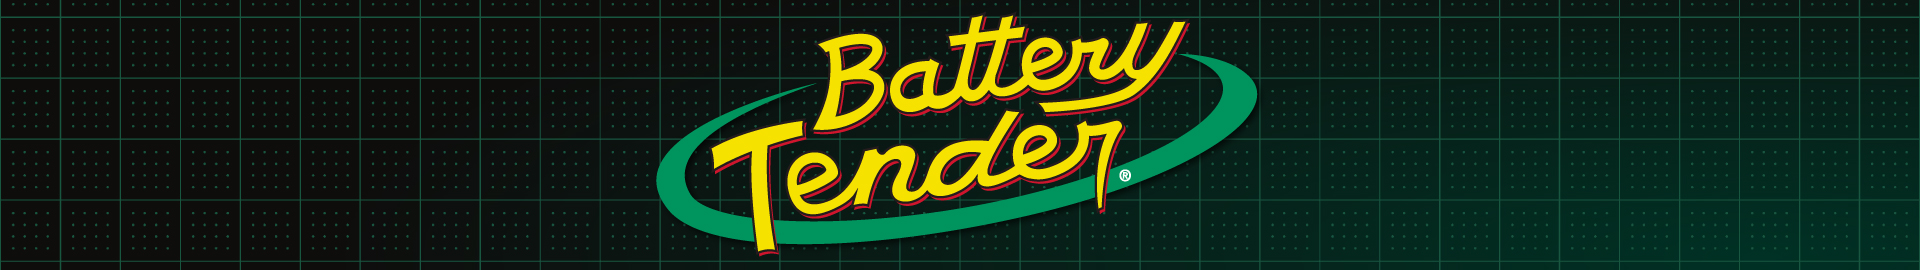 Battery Tender,Battery Tender,Battery Tender